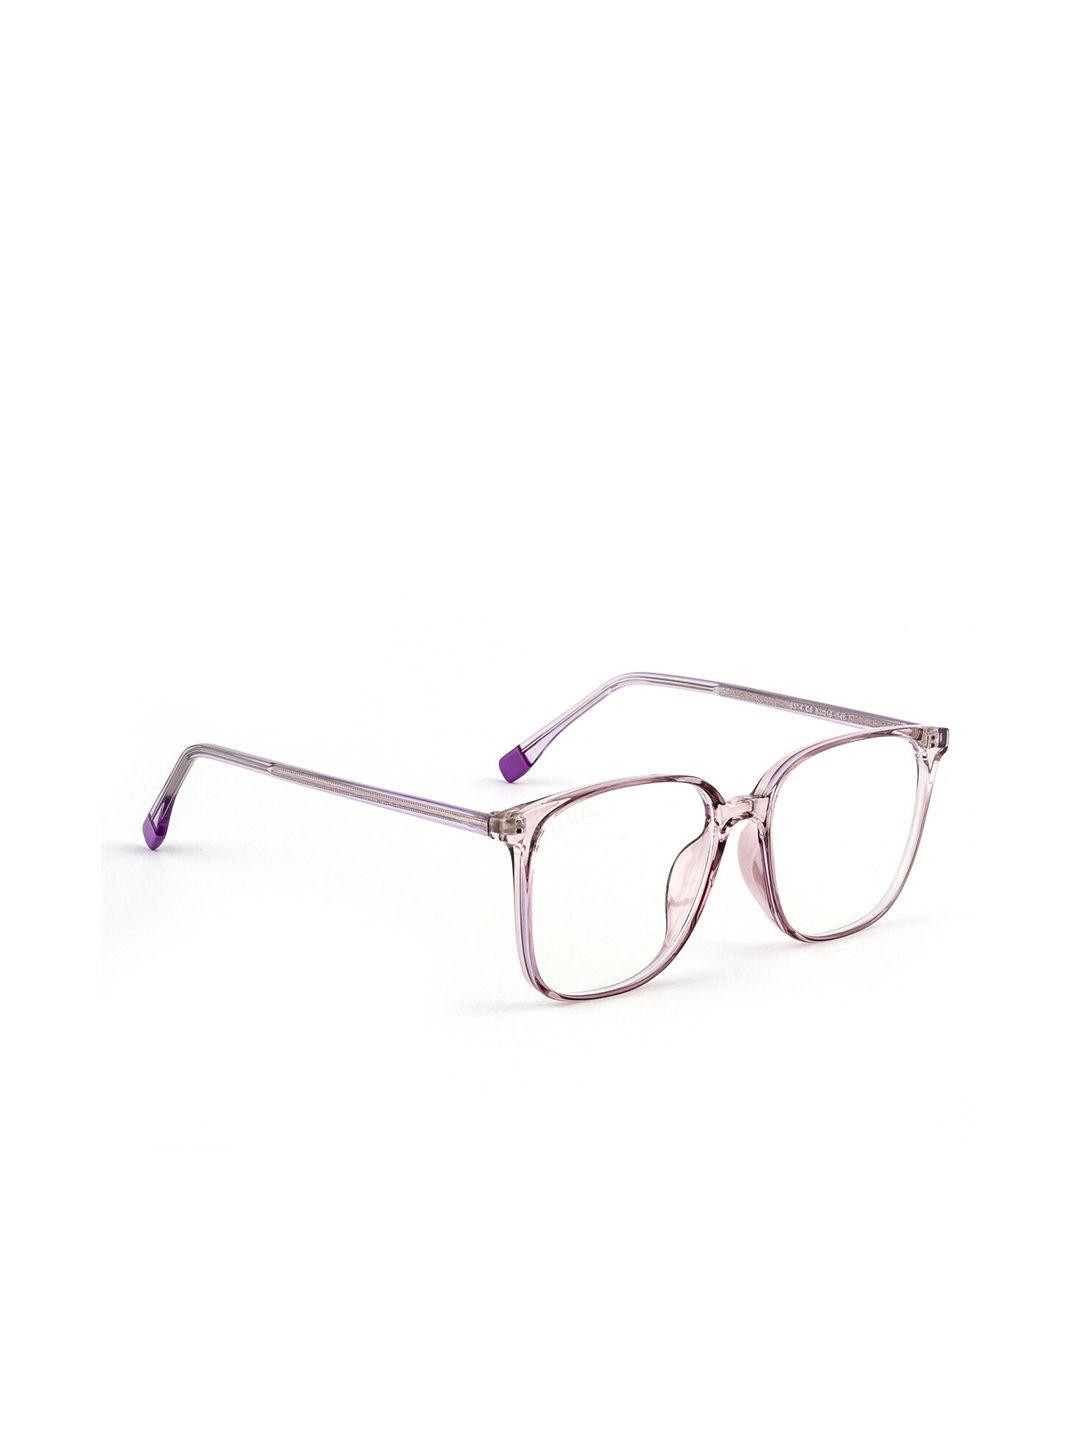 royal son unisex purple full rim spectacles frame square frames sf0026-c5